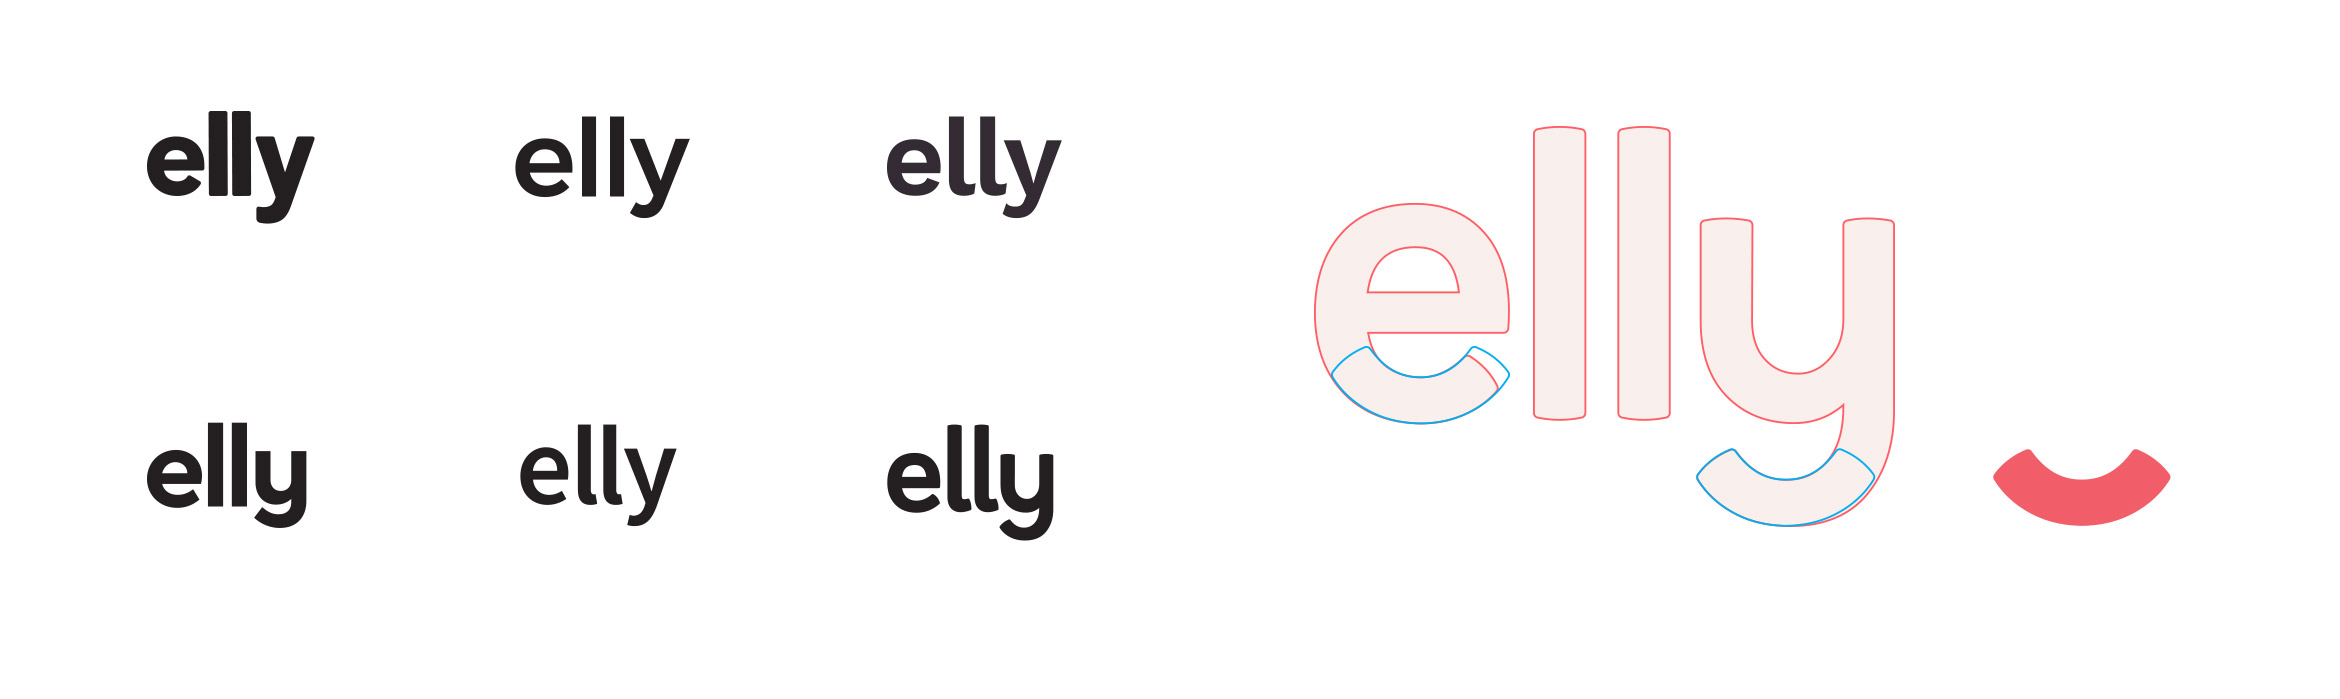 Elly-Dev2